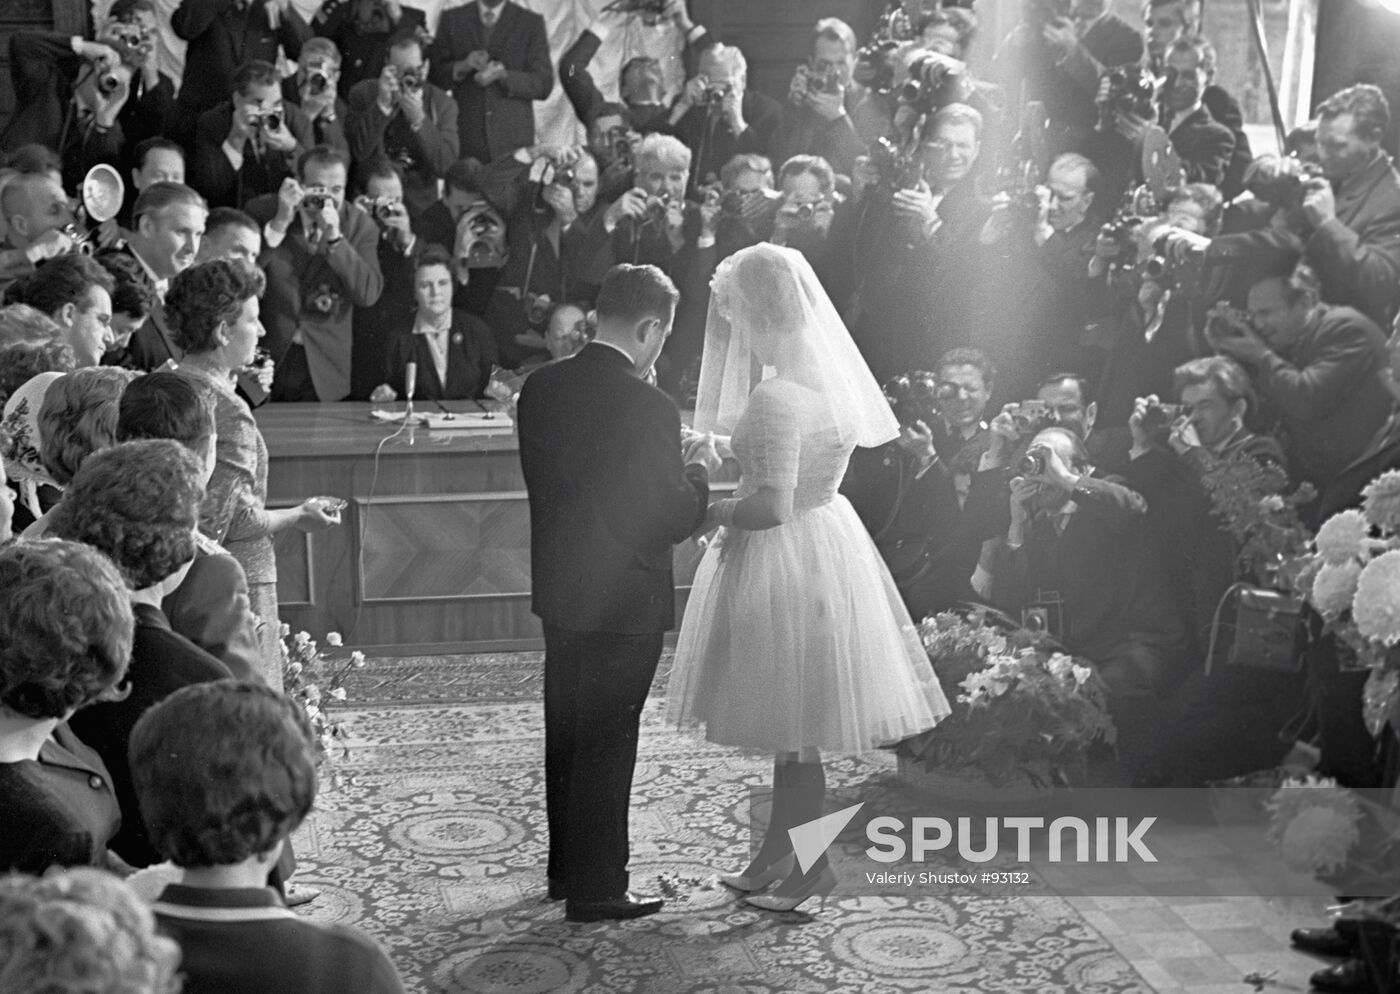 Wedding of the cosmonauts